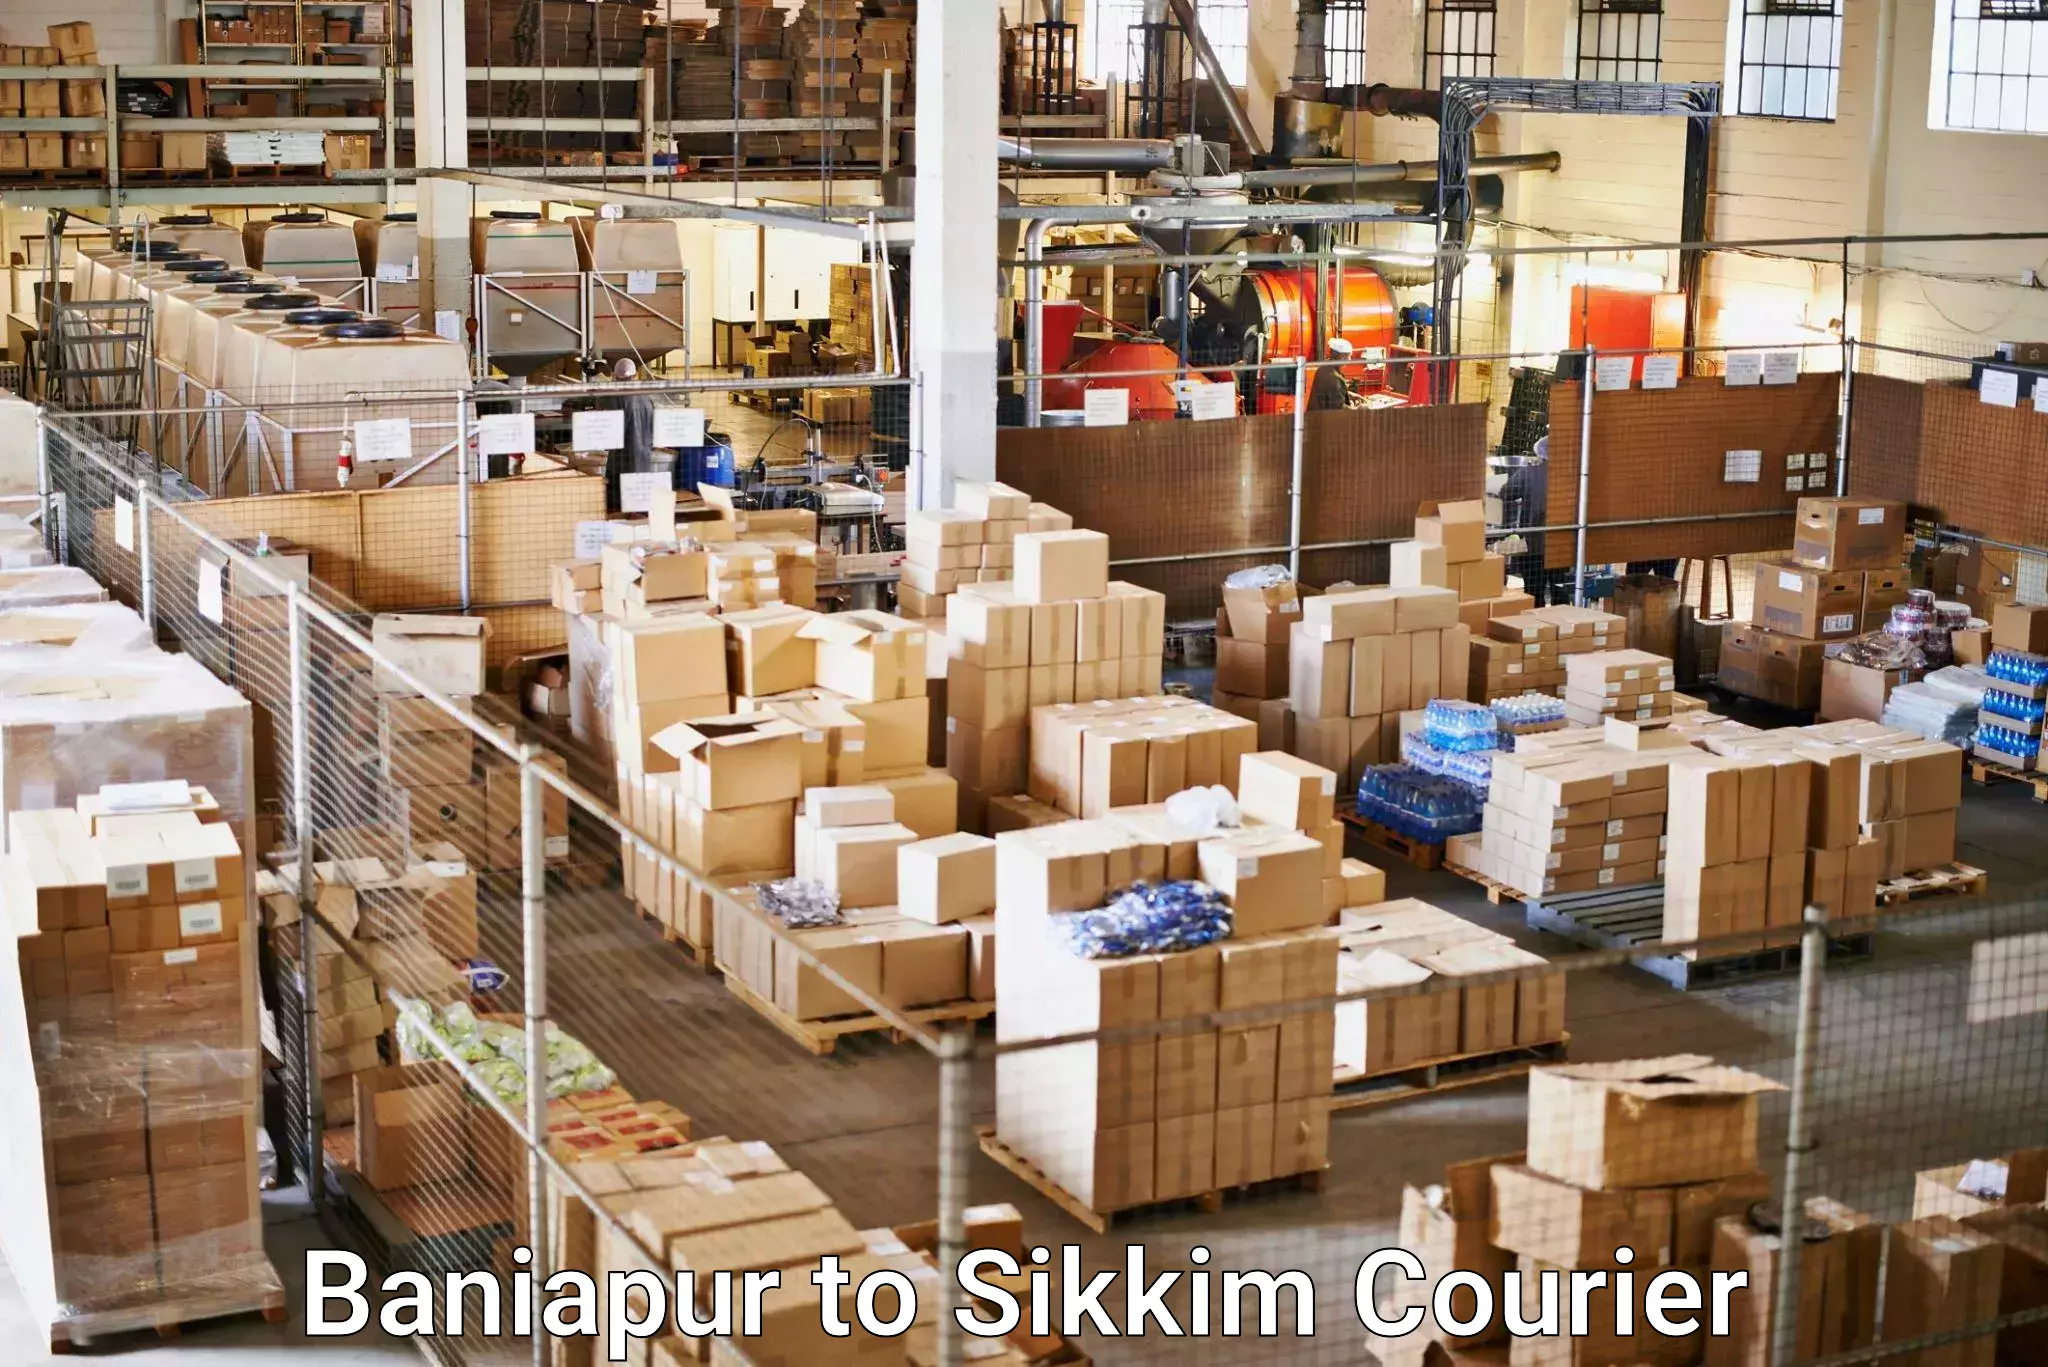 Comprehensive shipping services Baniapur to Gangtok